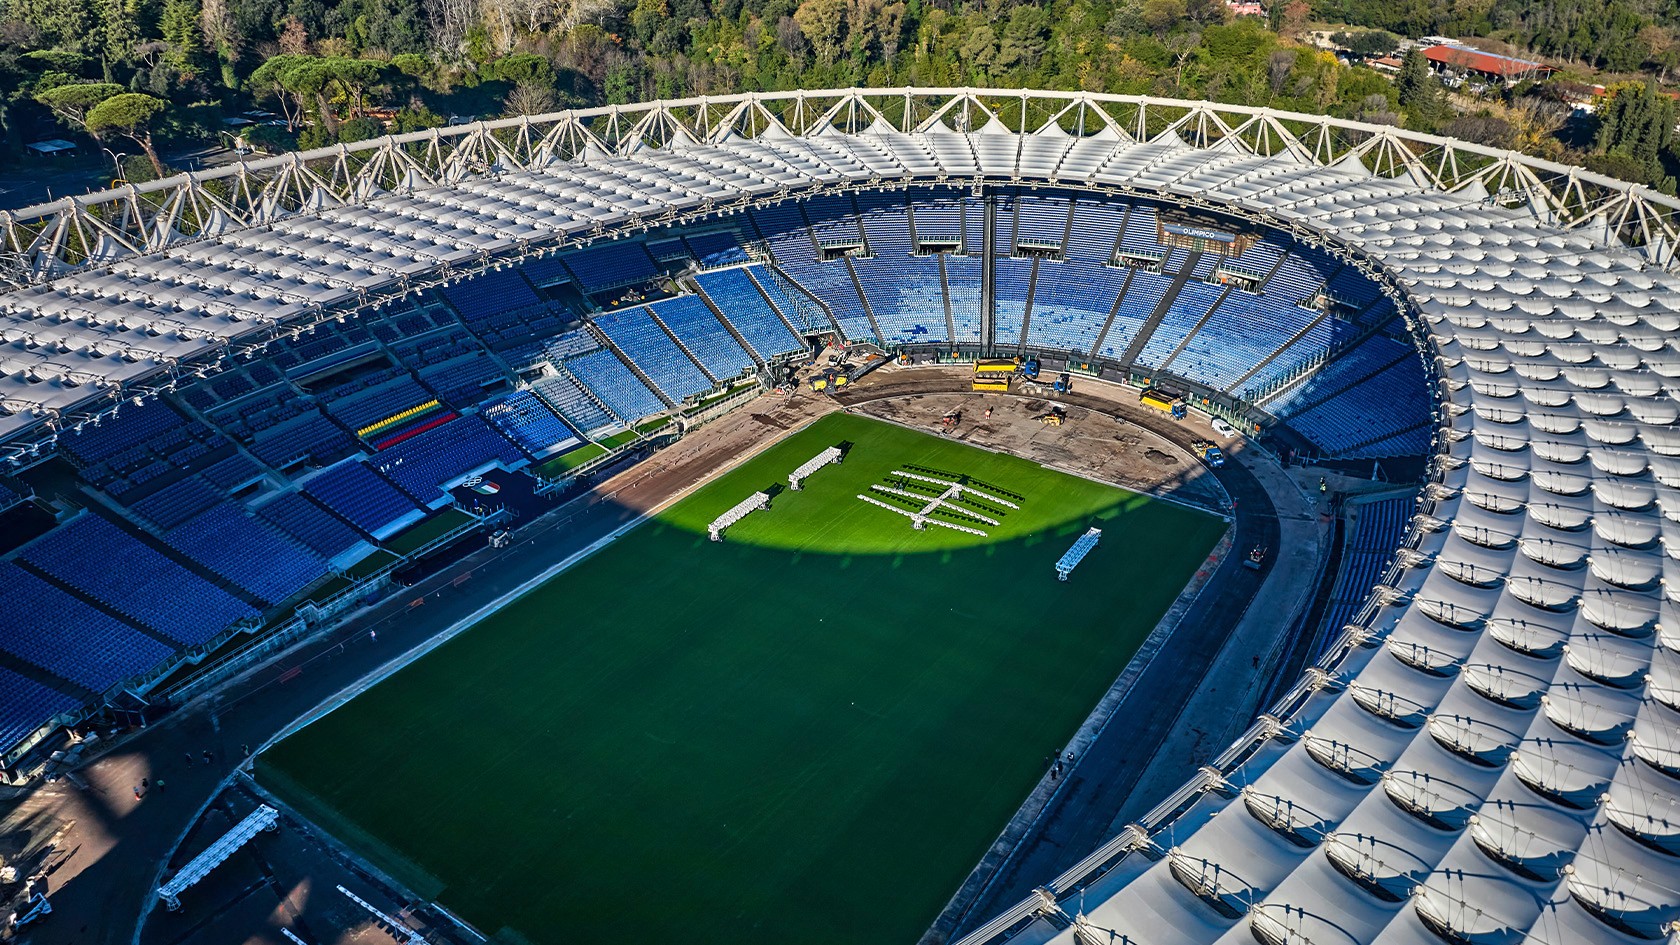 Vista superior do Estádio Olímpico de Roma